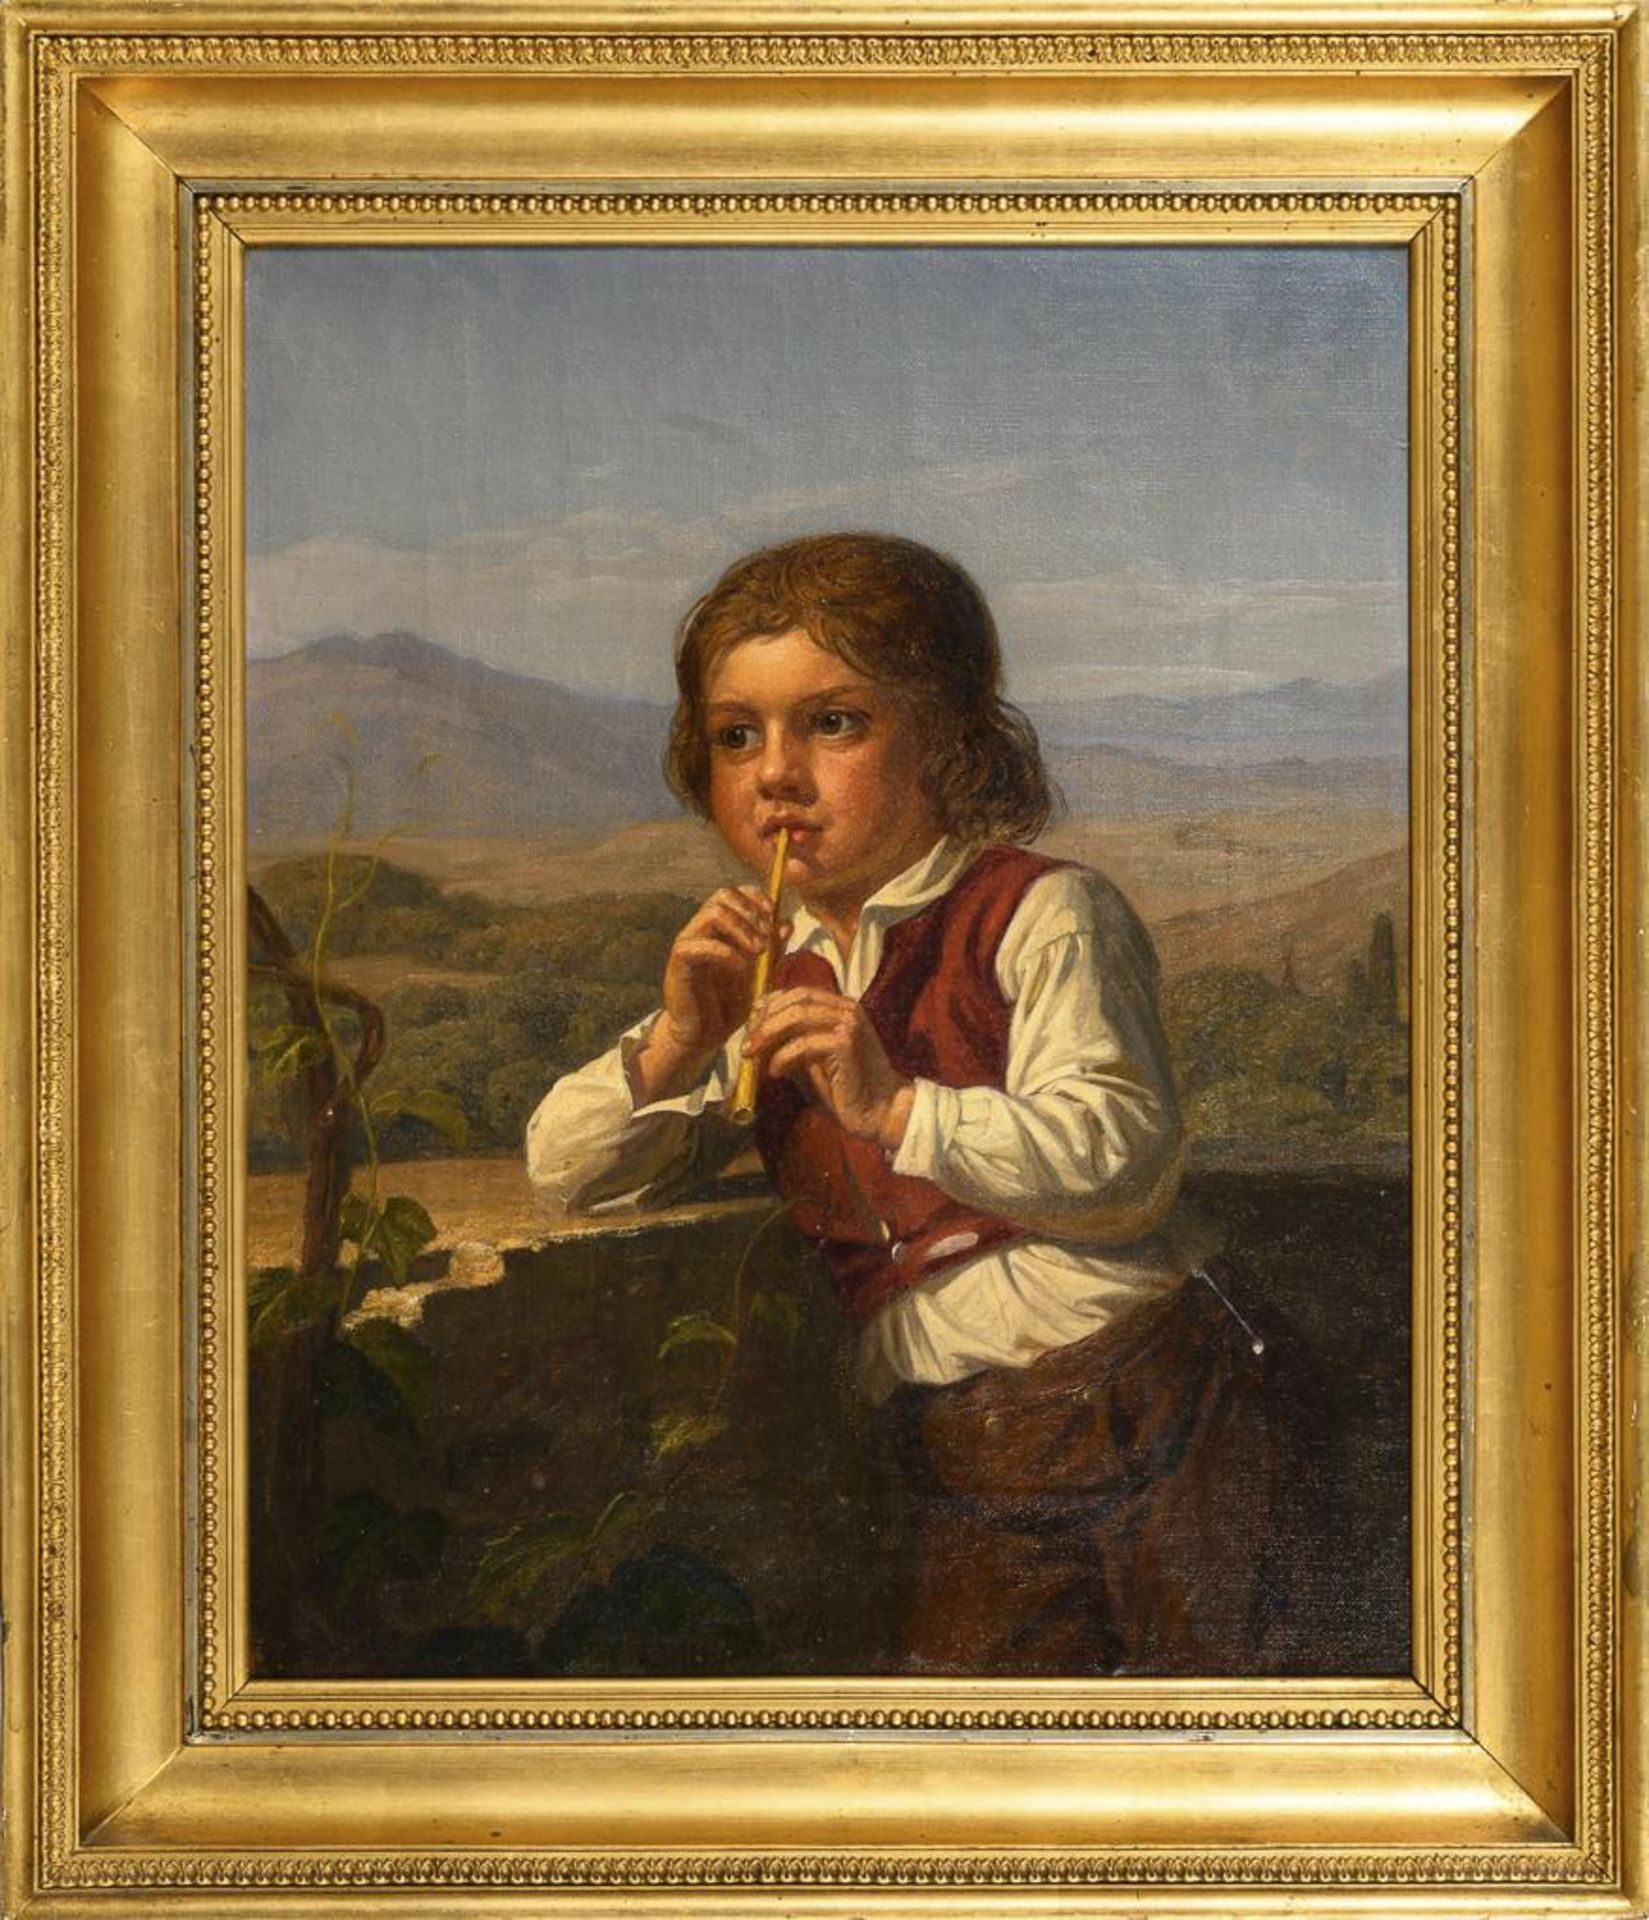 SCHIØTT, August  (1823 Helsingør - 1895 Hellebaek). Flöte spielender Knabe in südländischer Lands... - Bild 3 aus 4